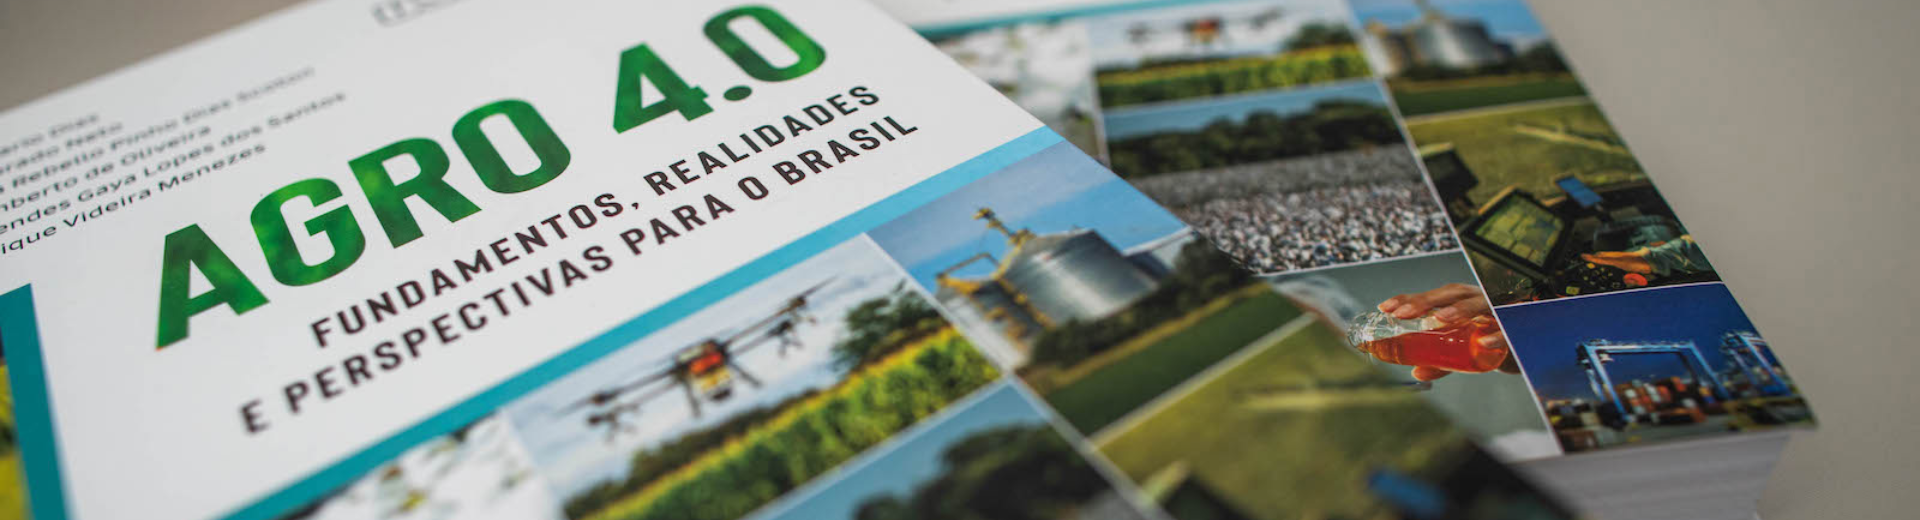 AGRO 4.0 - Fundamentos, realidades e perspectivas para o Brasil